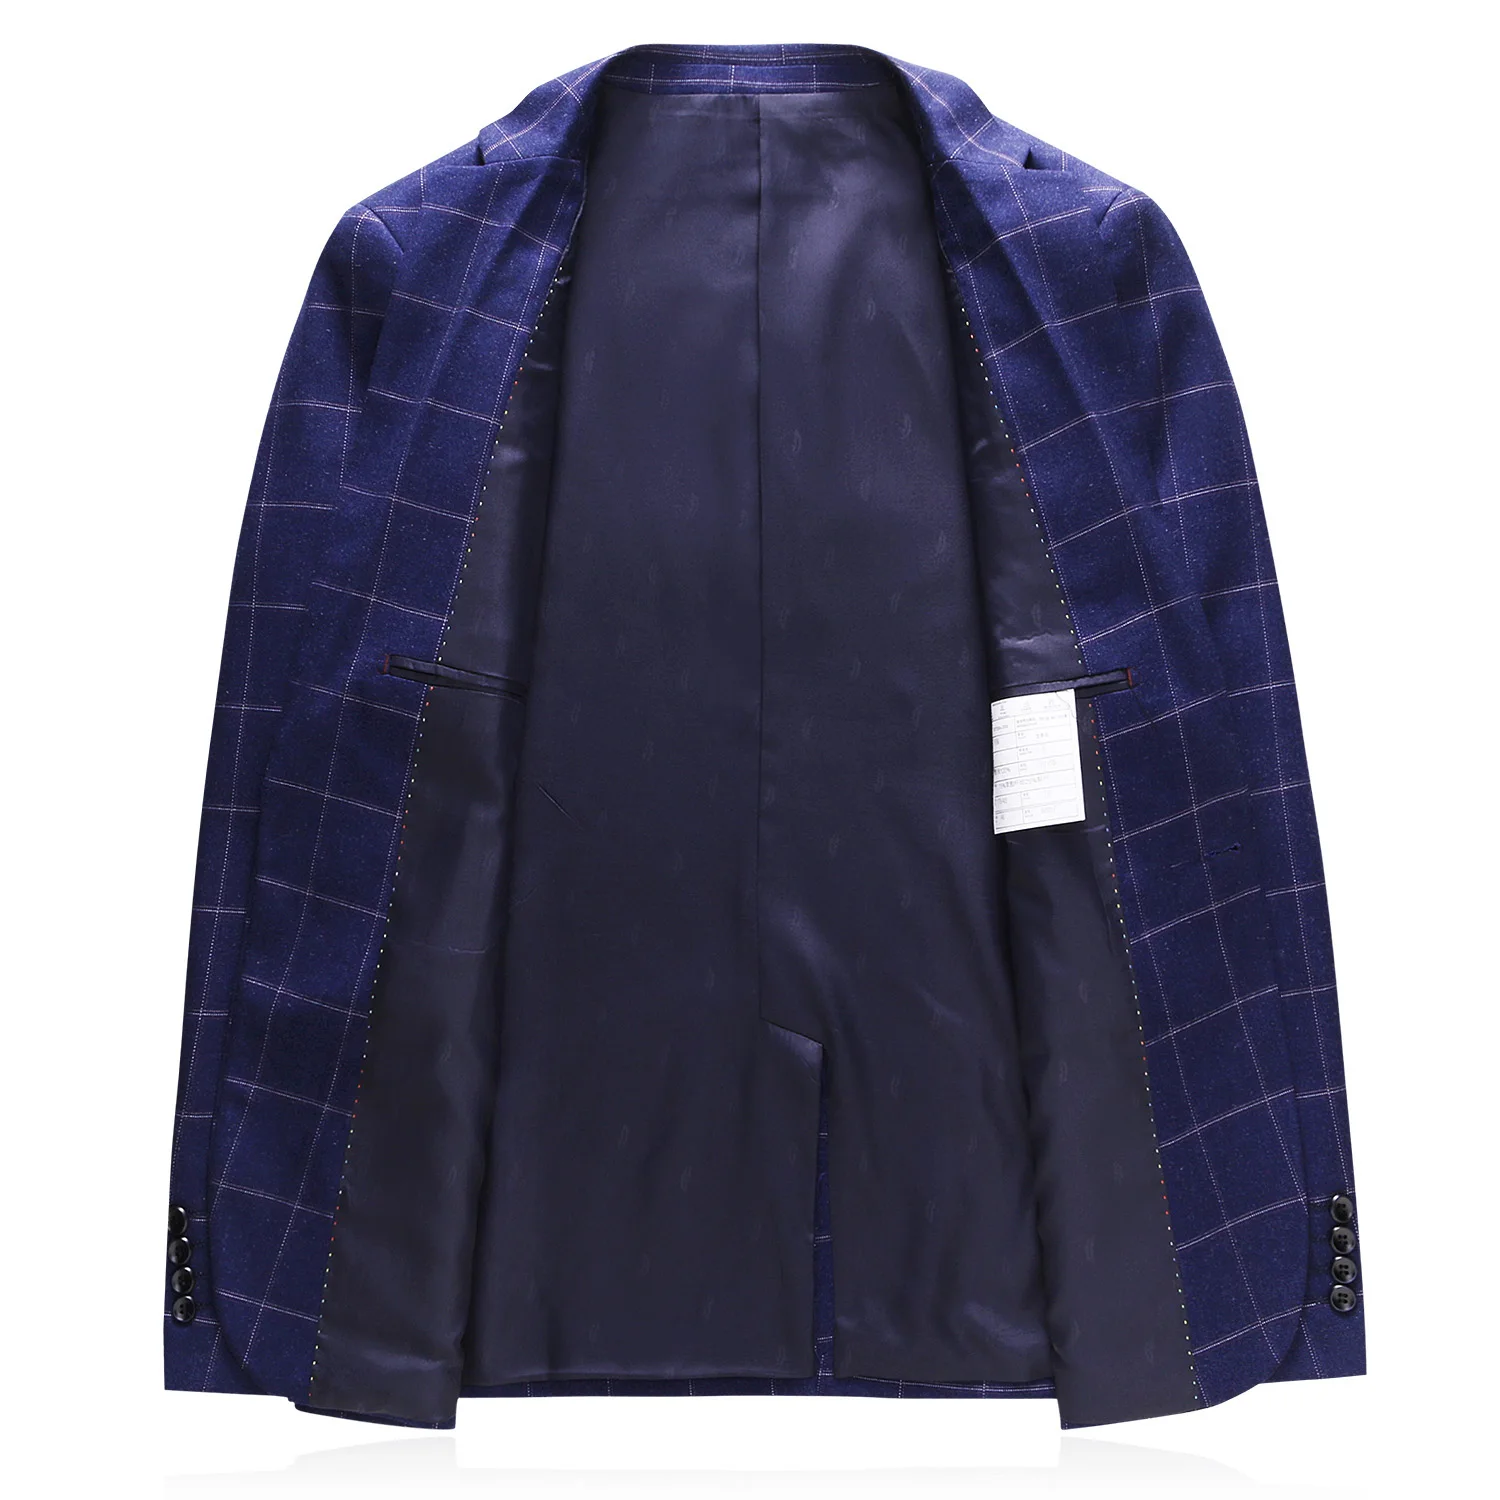 MOGU большой размер 4XL для мужчин полосатый костюм куртка Тонкий дизайн две кнопки блейзер для мужчин Бизнес Свадебная вечеринка мужской костюм пальто